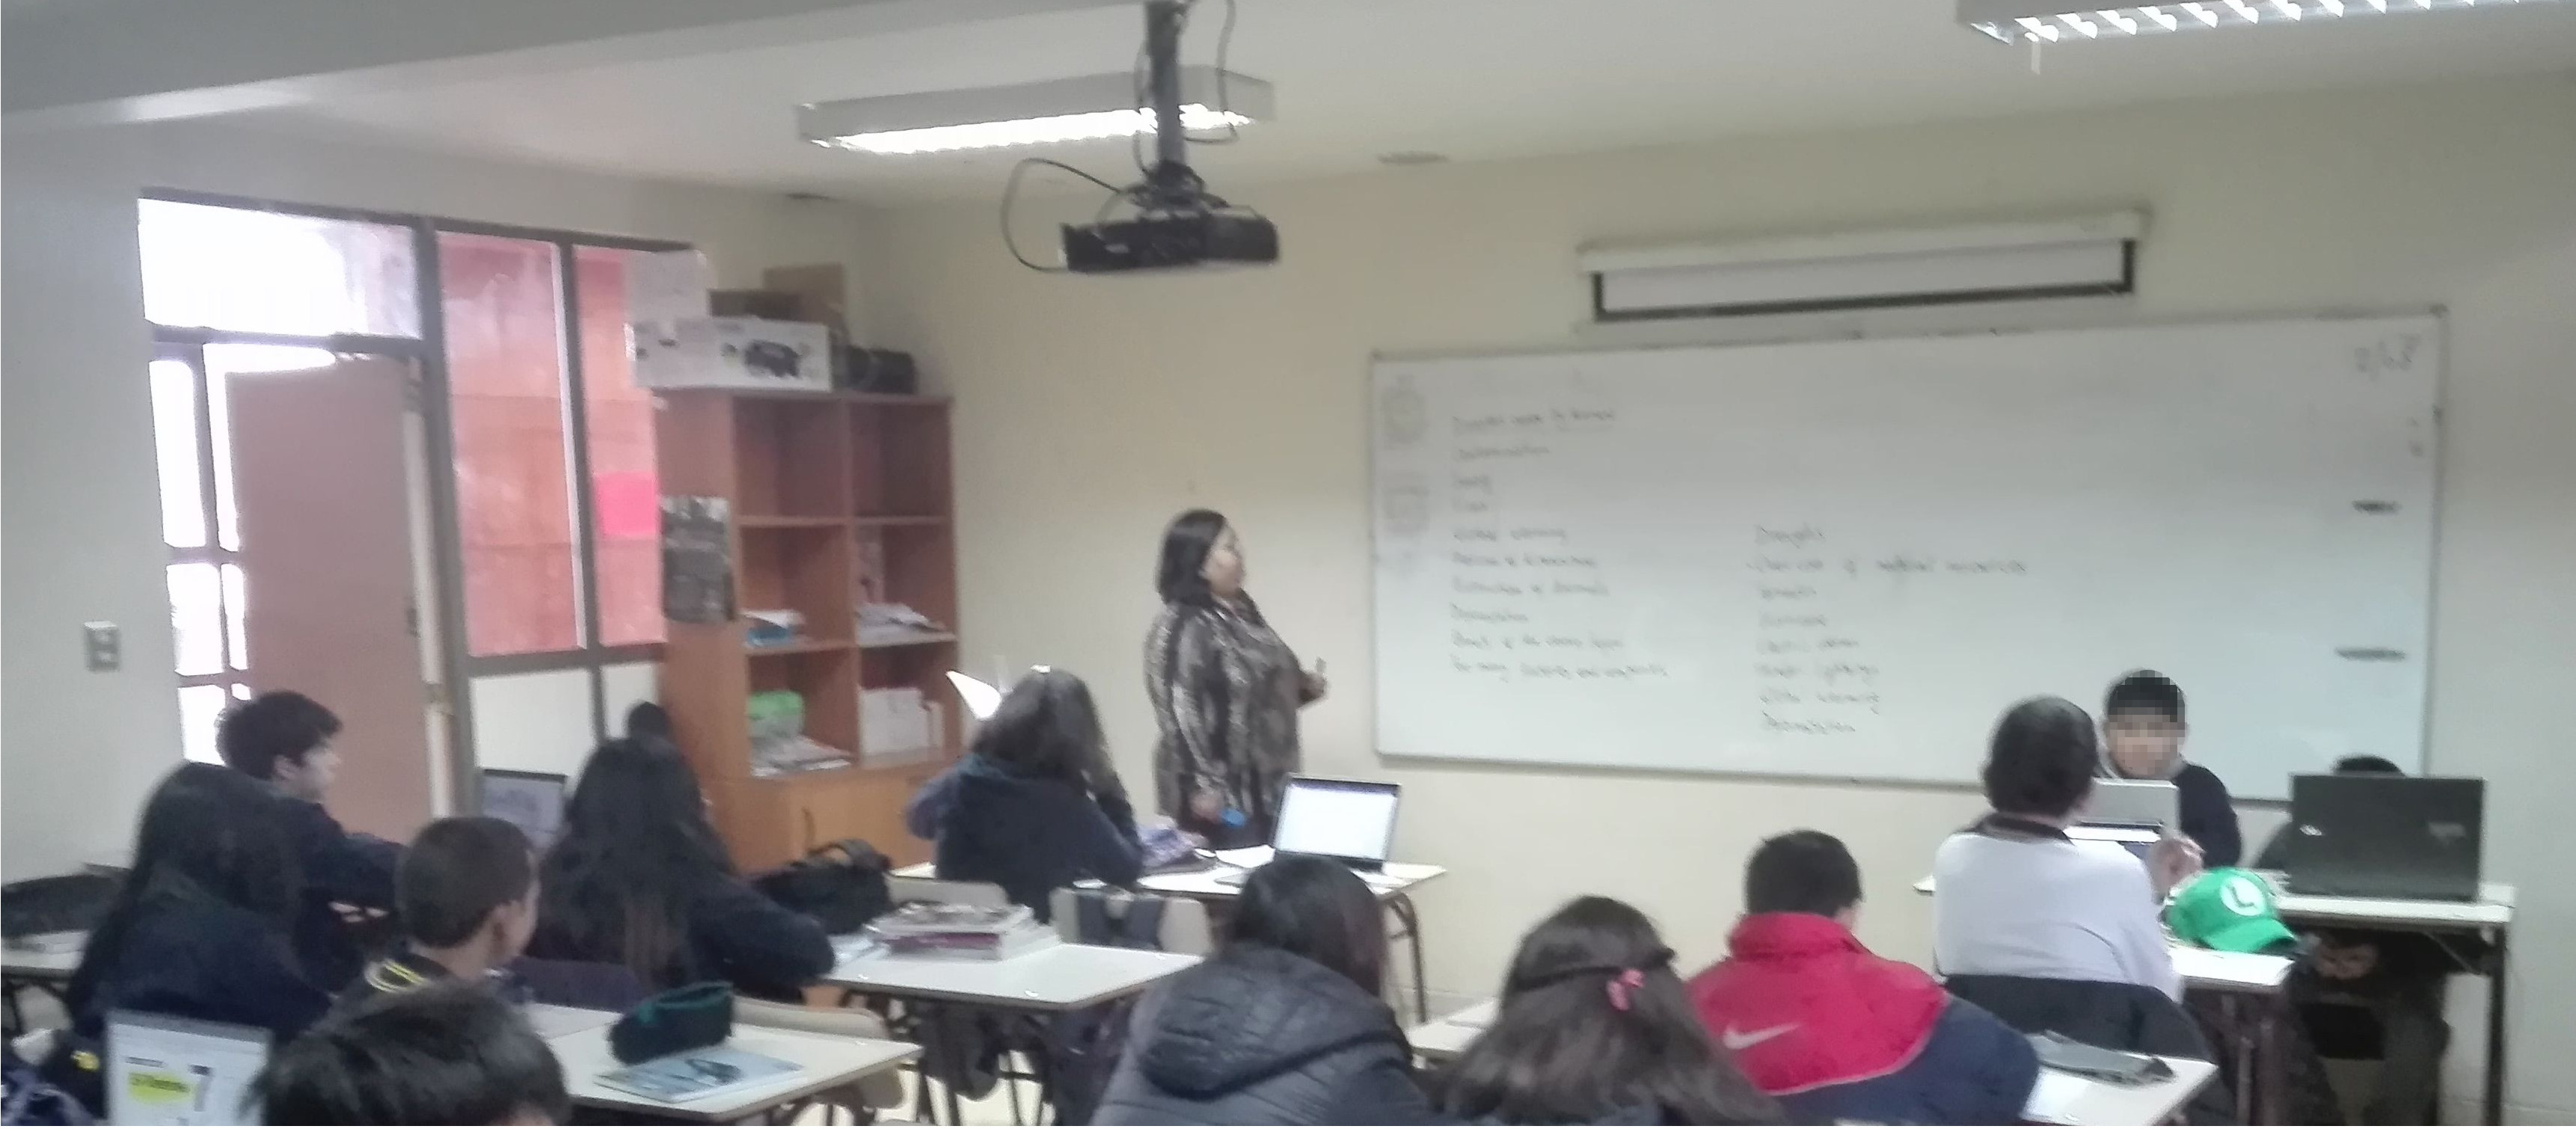 Cristina haciendo clases en una sala de clases